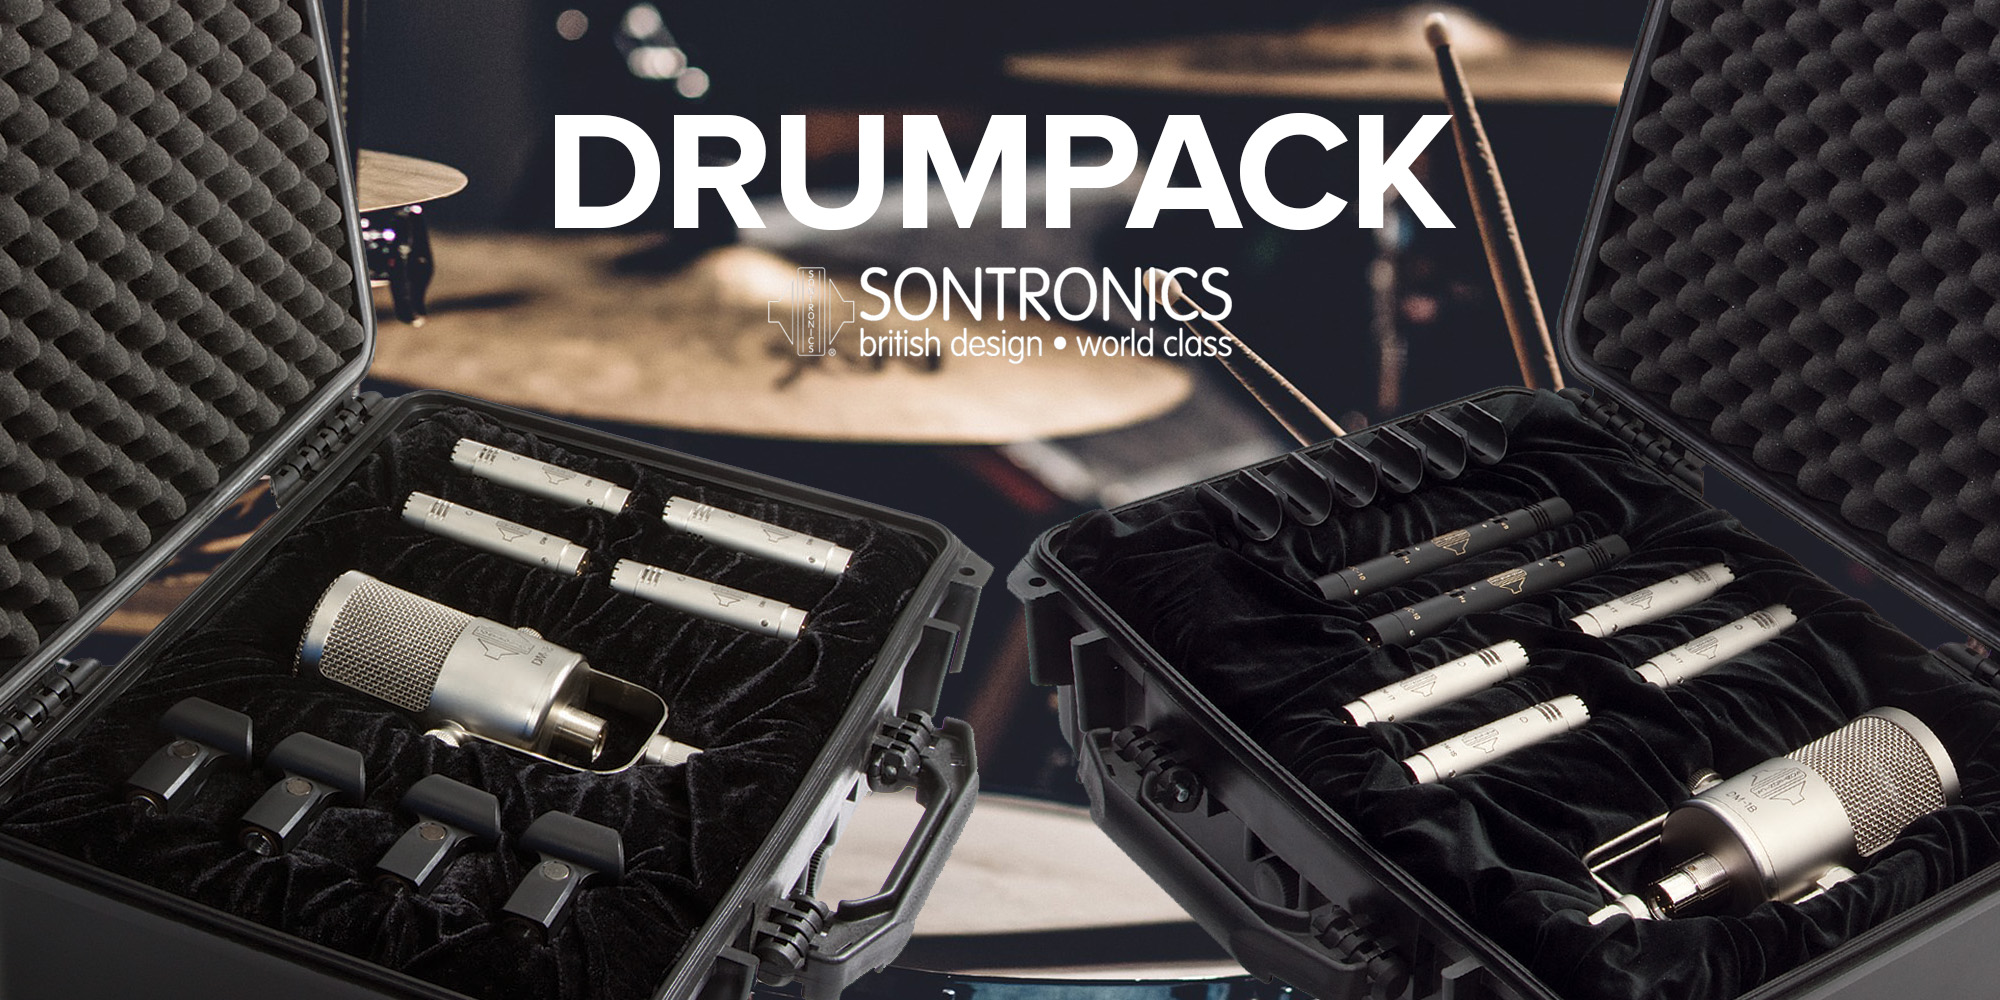 Sontronics DRUMPACK – Paket av prisbelönade trummikrofoner